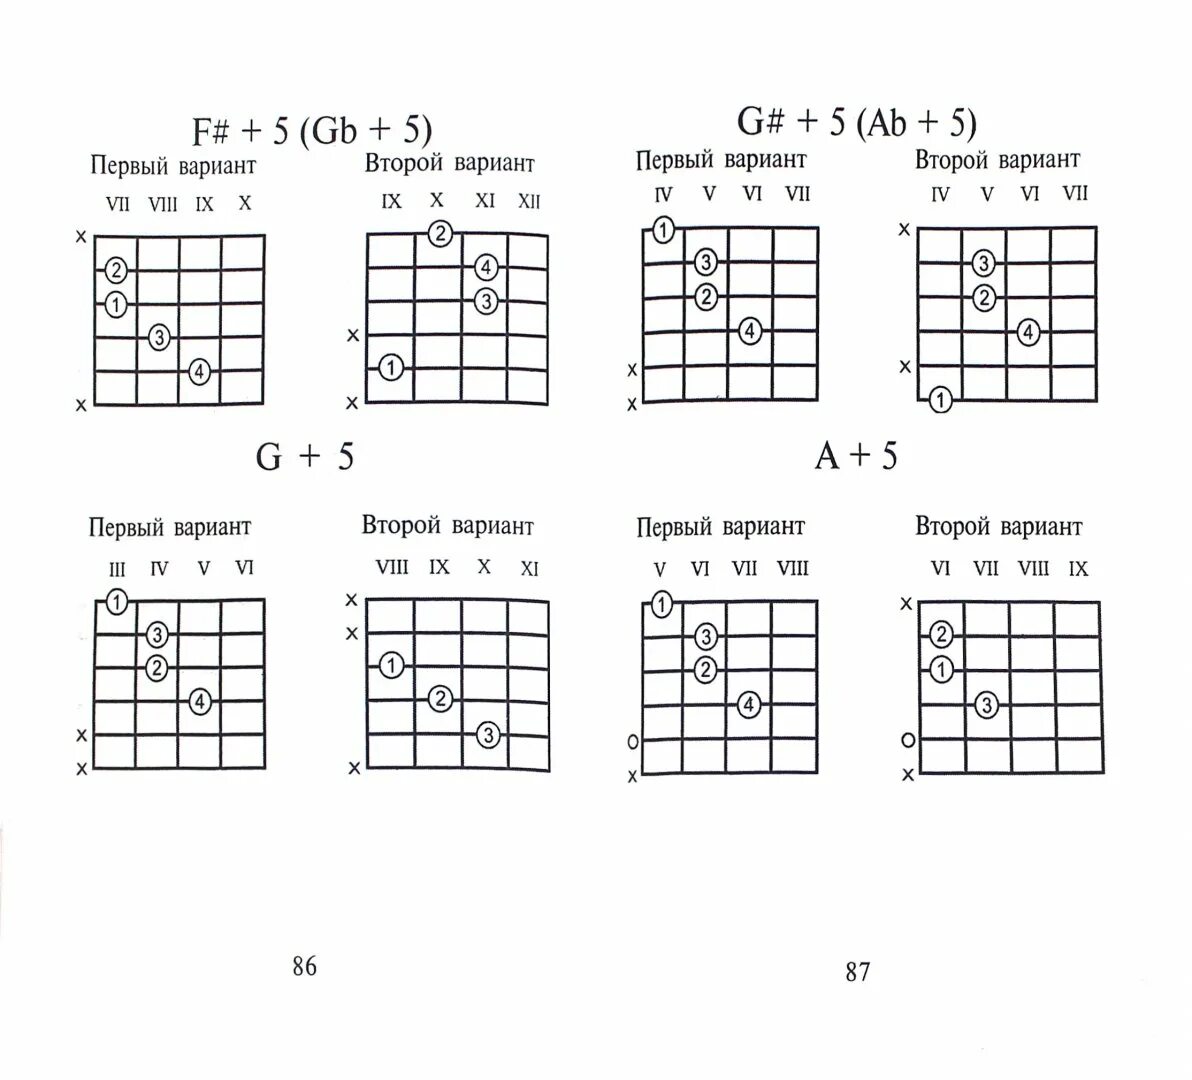 Таблица аккордов для гитары 6 струн. Аккорды на гитаре 6 струн схема для начинающих. Схемы аккордов 6 струнной гитары. Таблица аккордов для гитары 6 струн новичку.